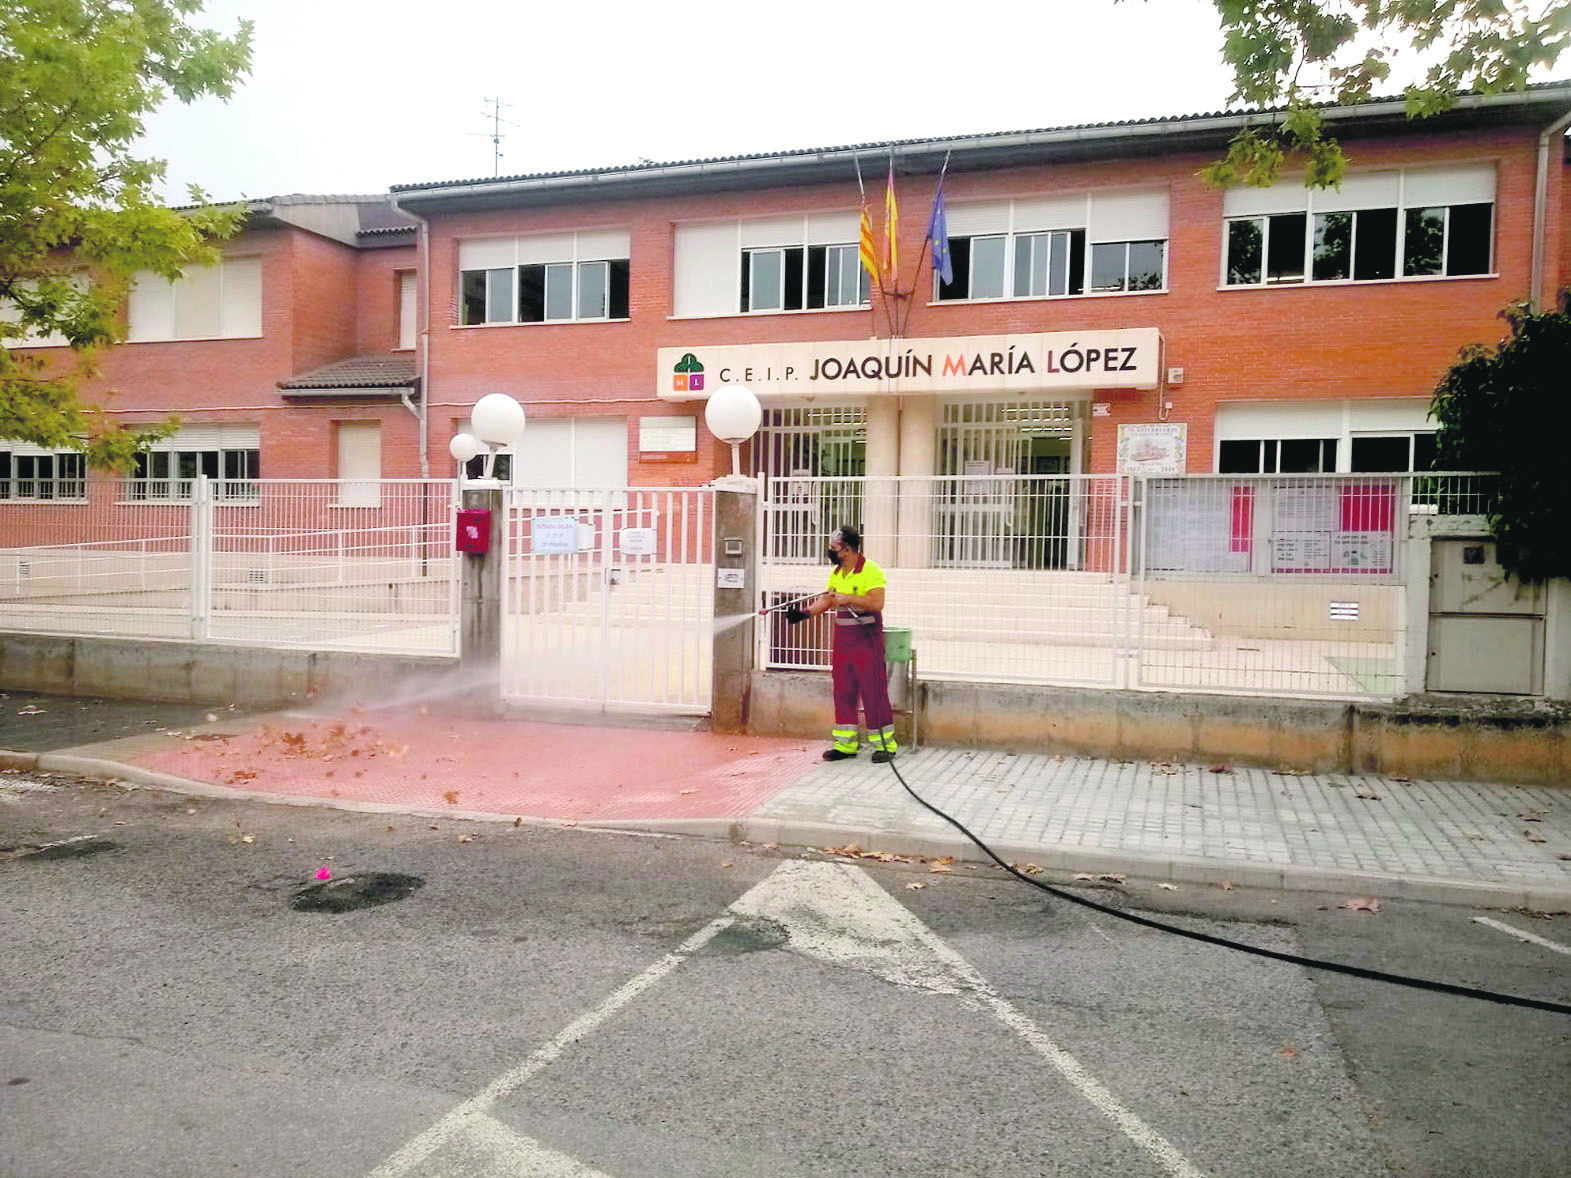 Cerrarán en junio los accesos al tráfico en el colegio Joaquín María López